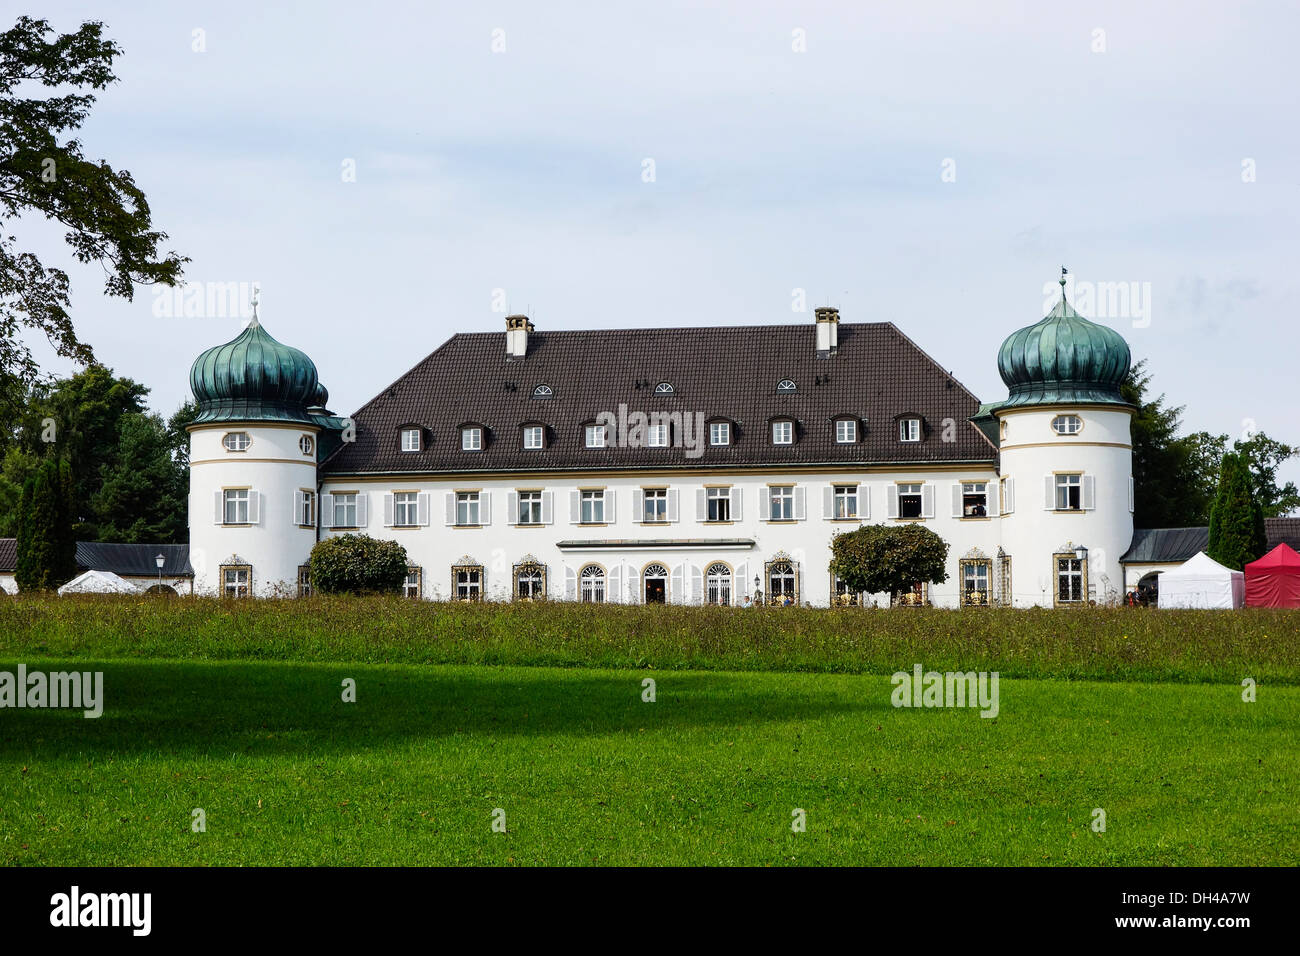 Hoehenried château près de Bernried sur le Lac de Starnberg, Berlin, Allemagne Banque D'Images